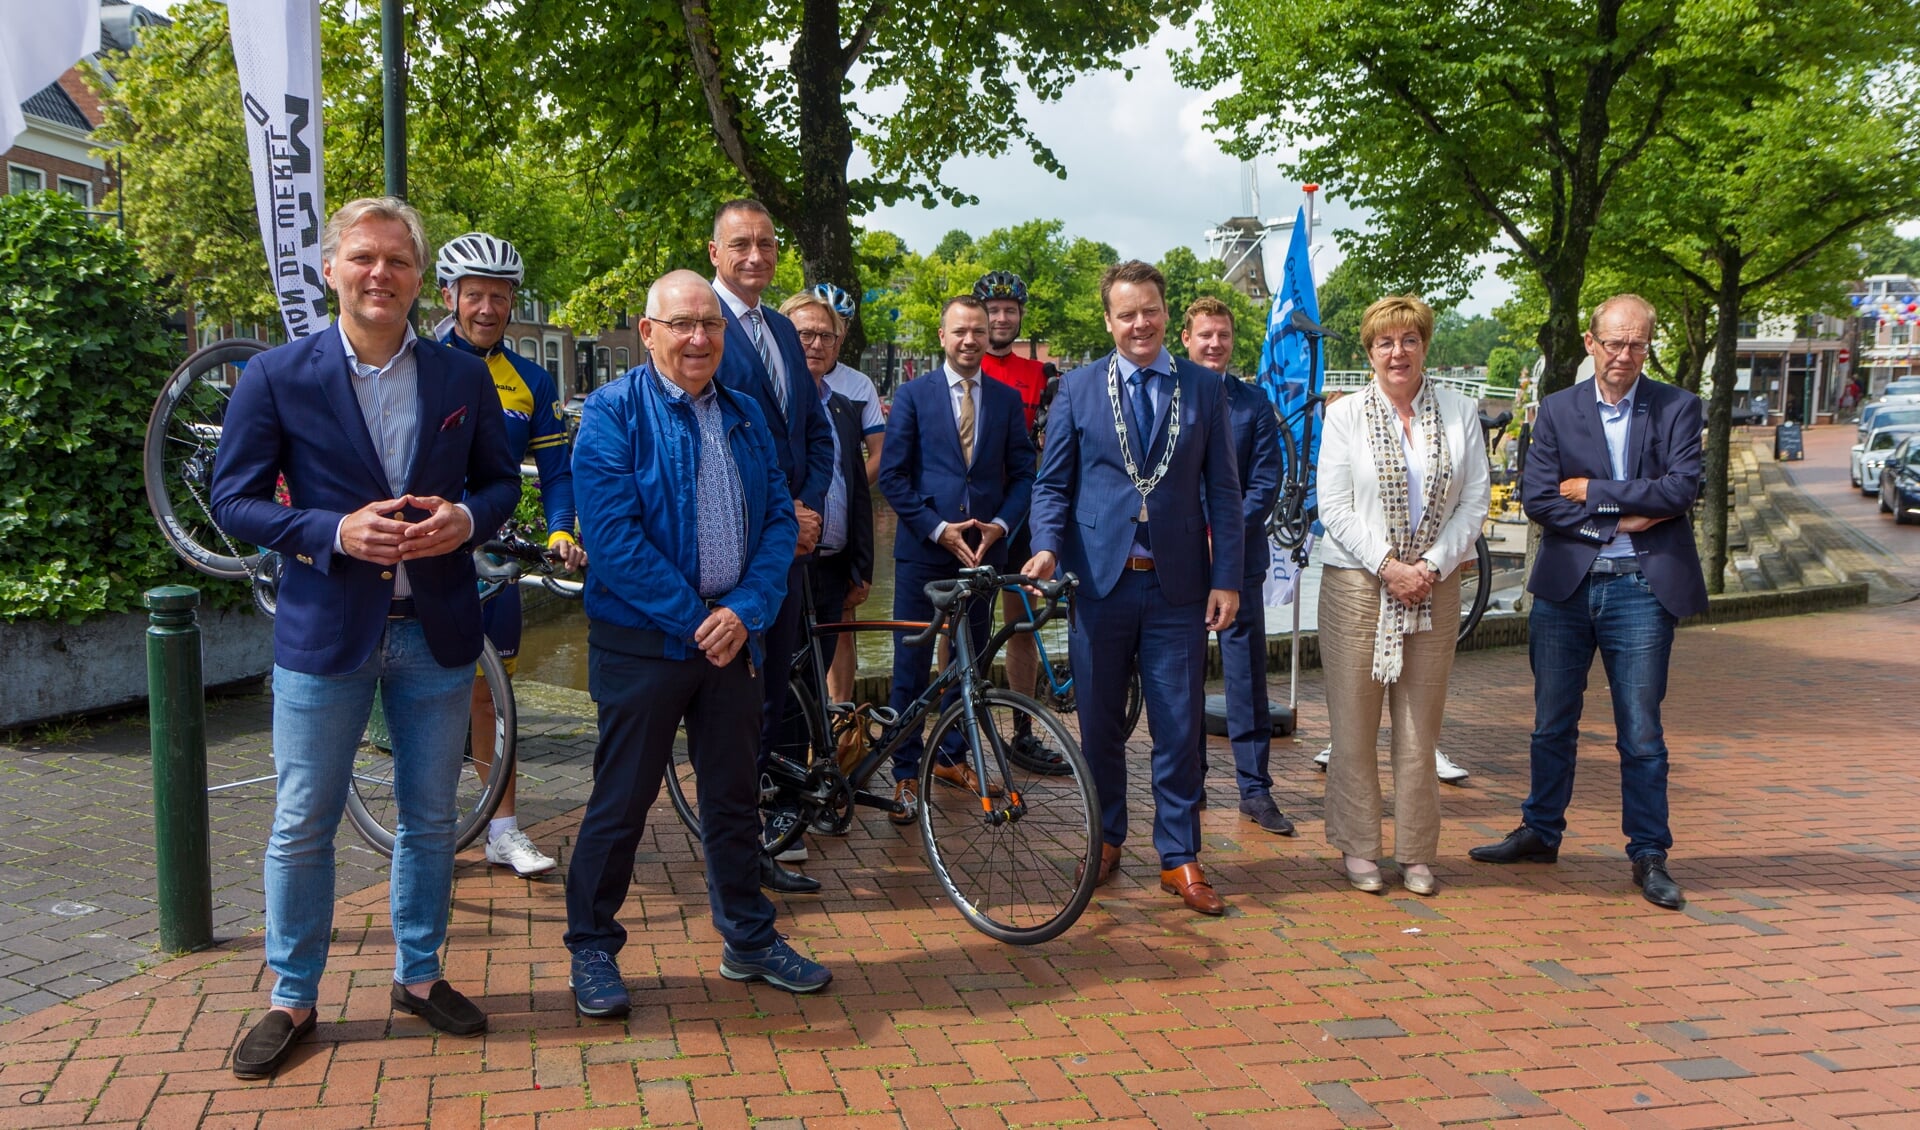 Organisatoren en bestuurders tijdens de presentatie over de Benelux Tour 2021.